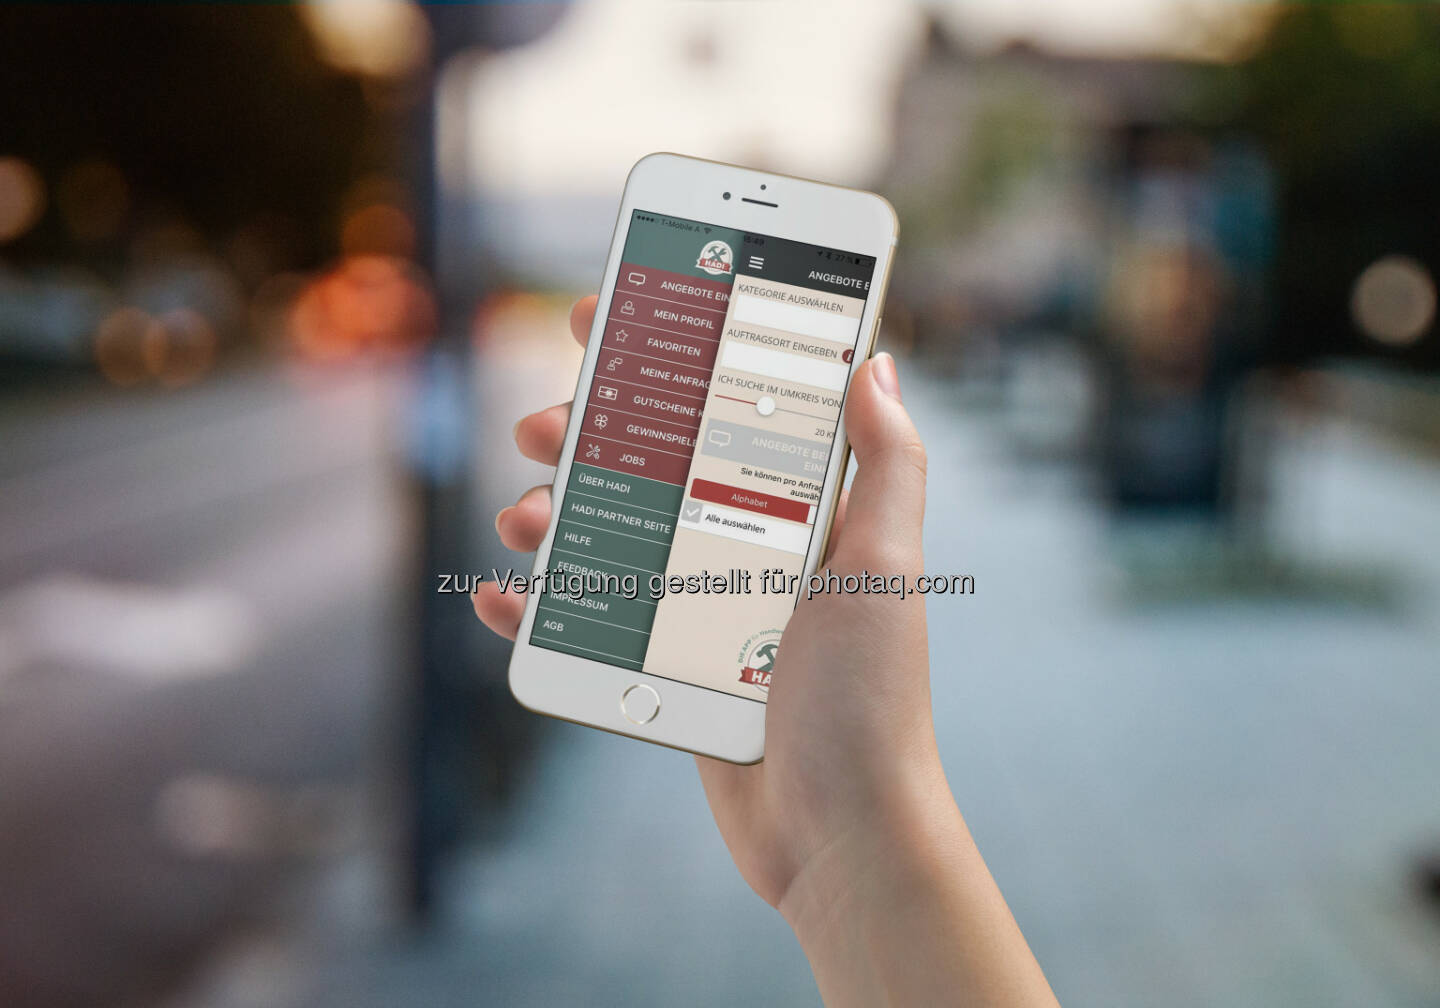 Hadi App : Per Smartphone Handwerker & Dienstleister finden - und als Unternehmer zu günstigen Konditionen einkaufen: Fotocredit: Hadi App GmbH/Envato Market / Punedesign